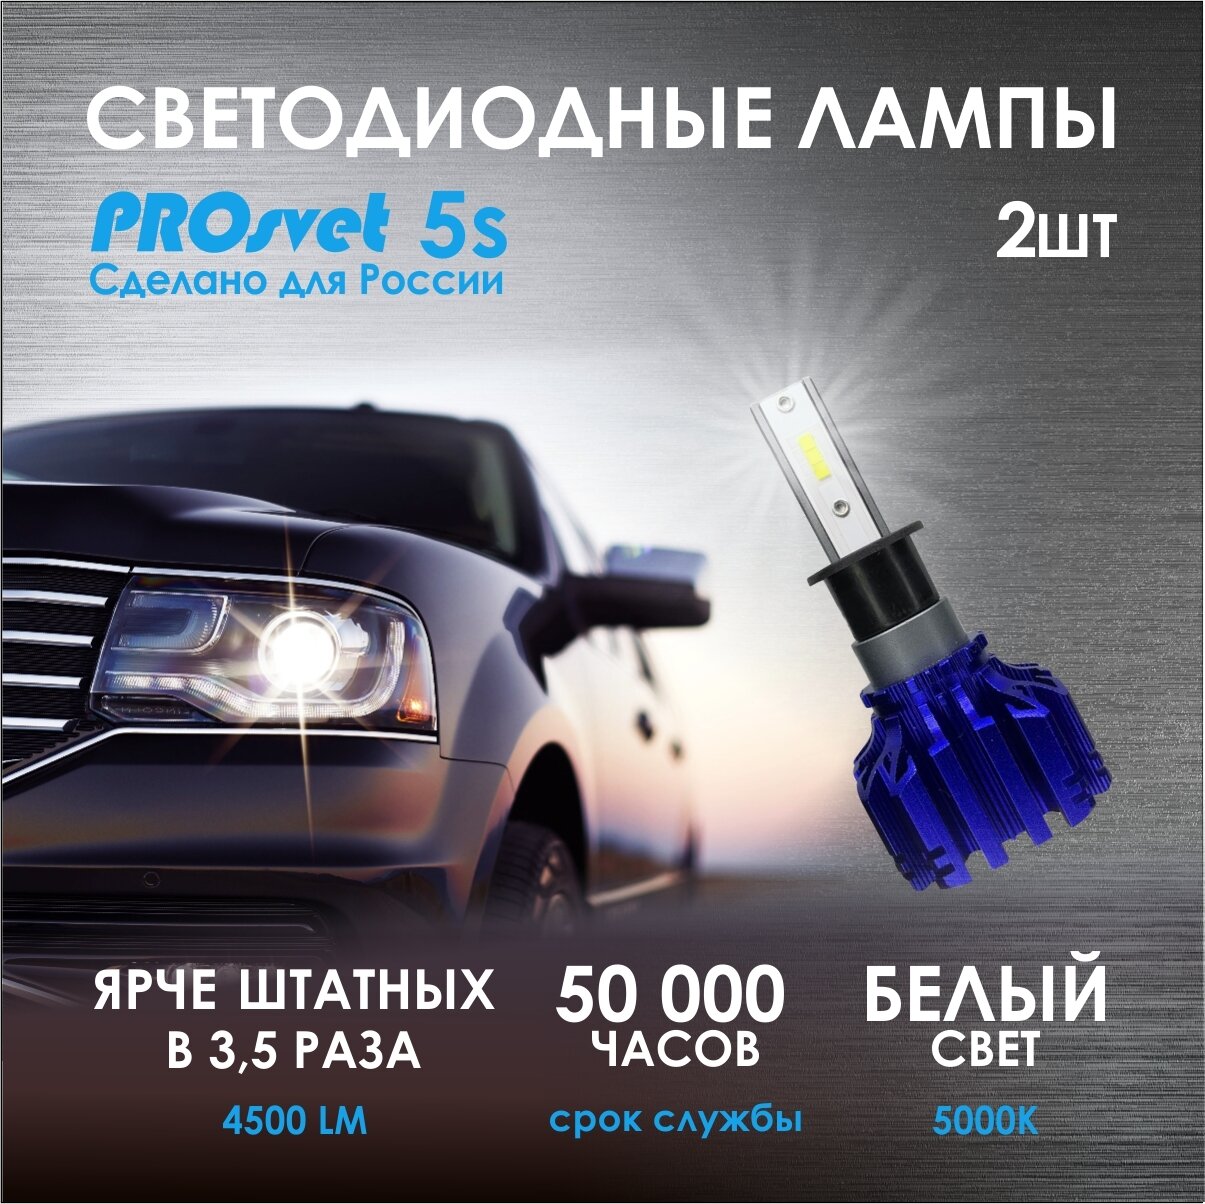 Светодиодные лампы Hb4 PROsvet S5 hb4 led лампа для ПТФ / ближнего / дальнего света / 9006 (комплект 2шт)